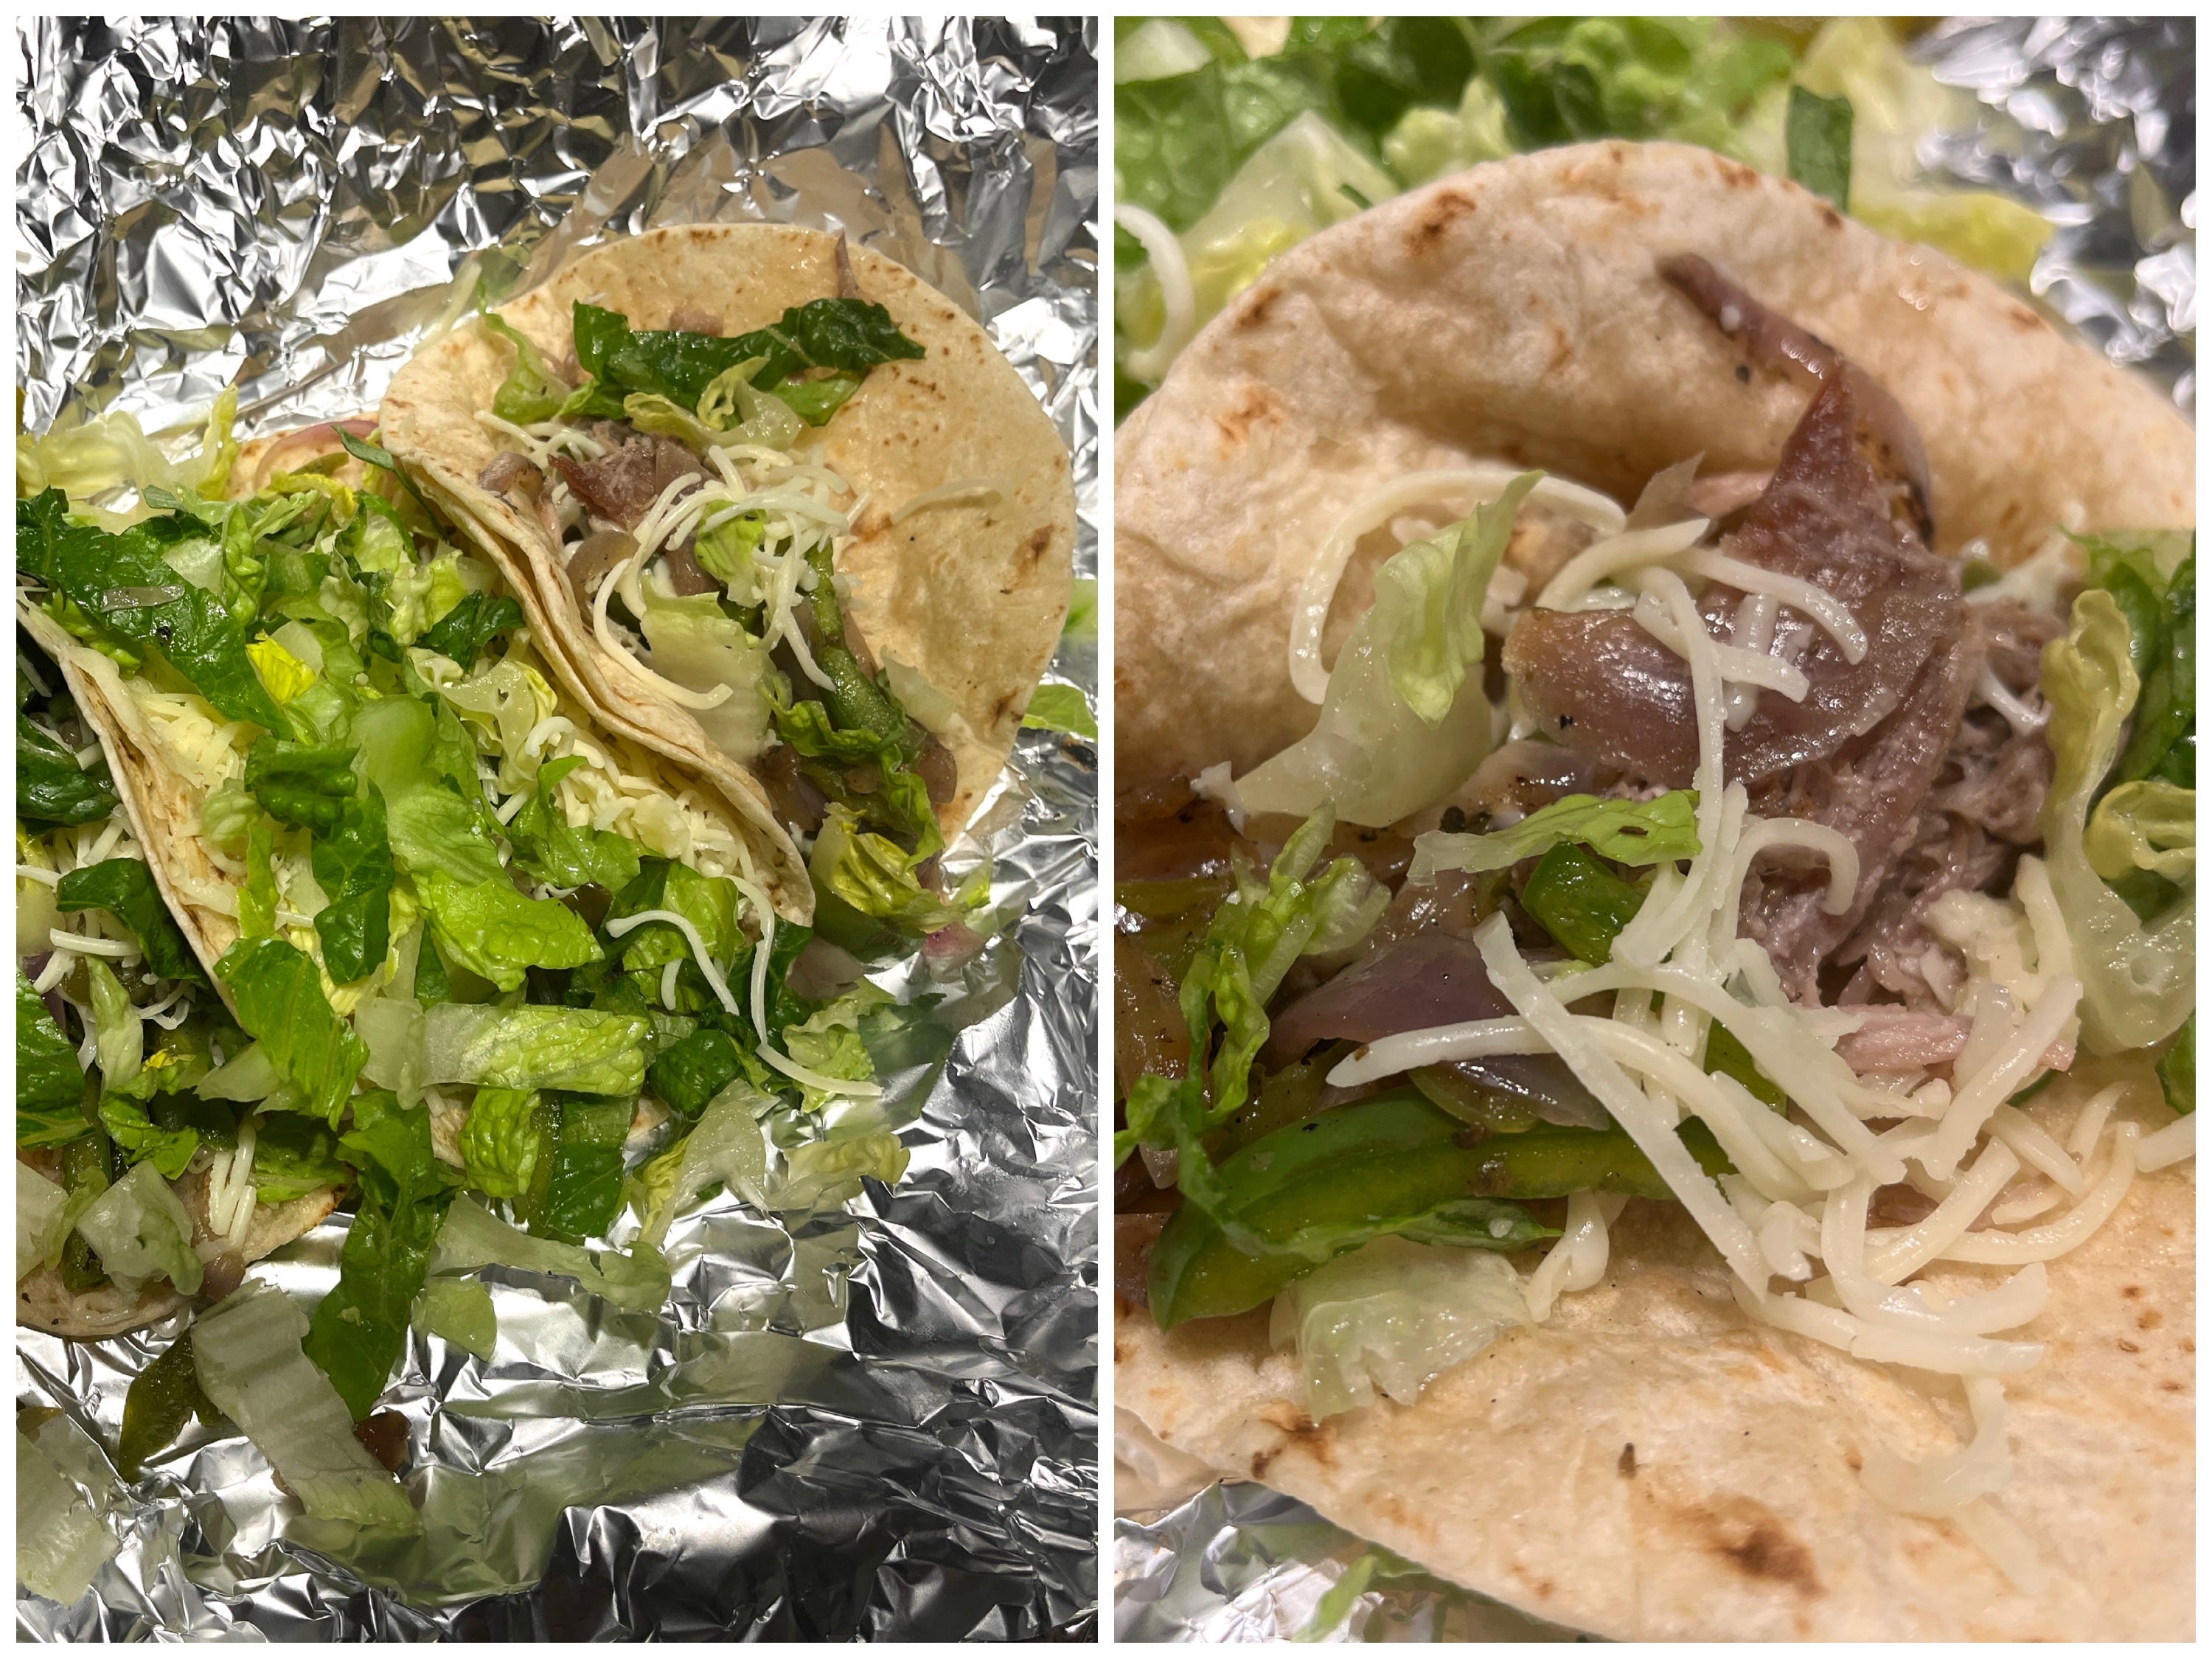 Ein Side-by-Side-Tacos von Chipotle in Alufolie verpackt